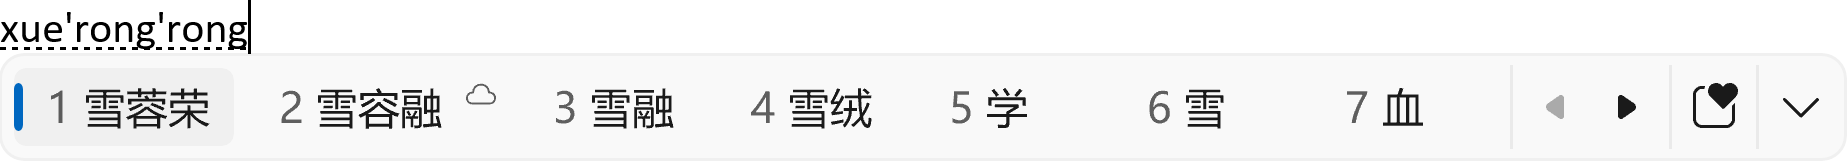 2 位に Bing からの単語の候補が表示された簡体字中国語の IME 候補ウィンドウ。